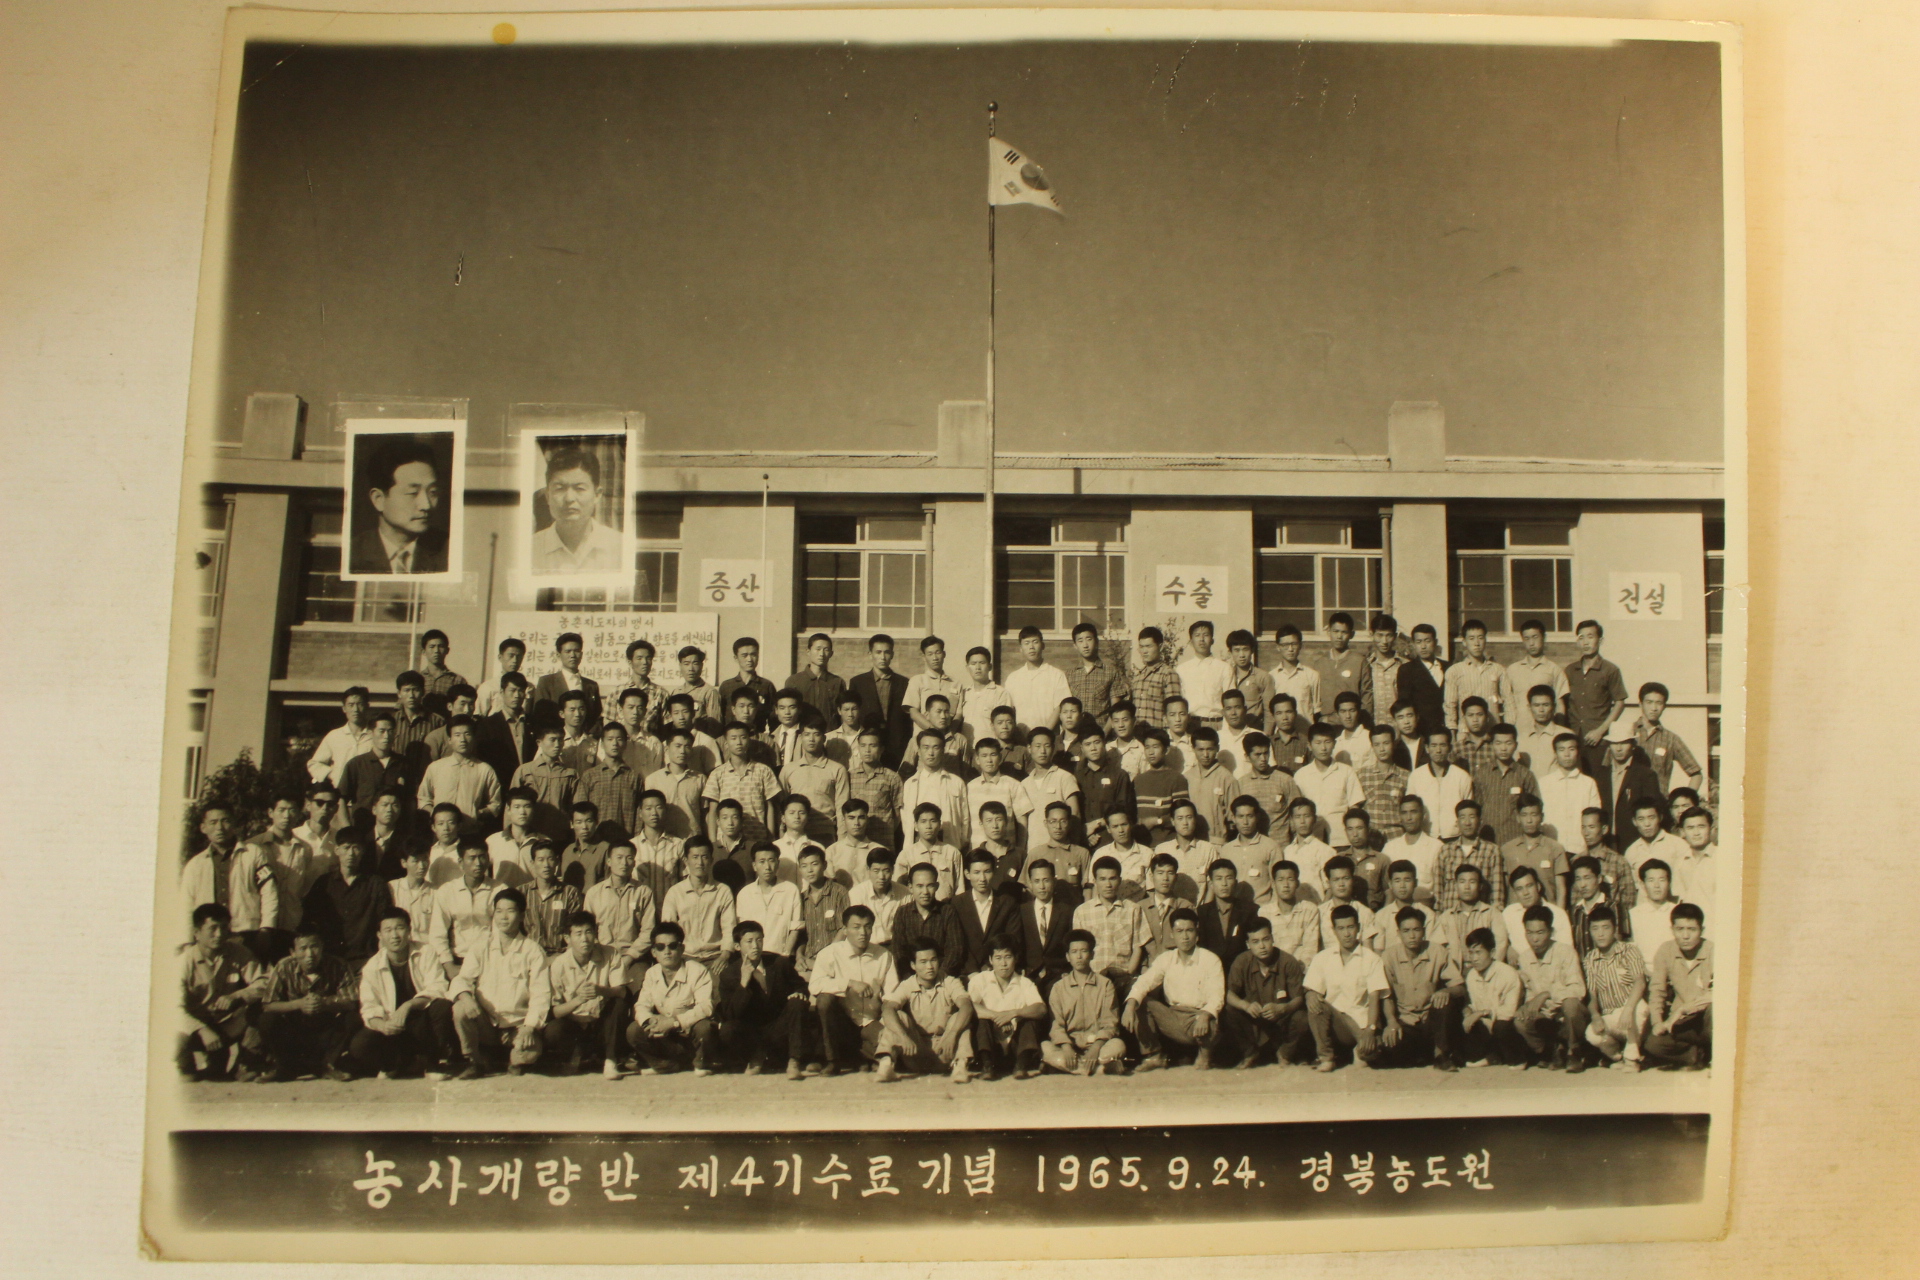 1963년,65년,66년 경상북도 공무원,생활개선반,농사개량반 등 사진일괄 24장(추가사진)